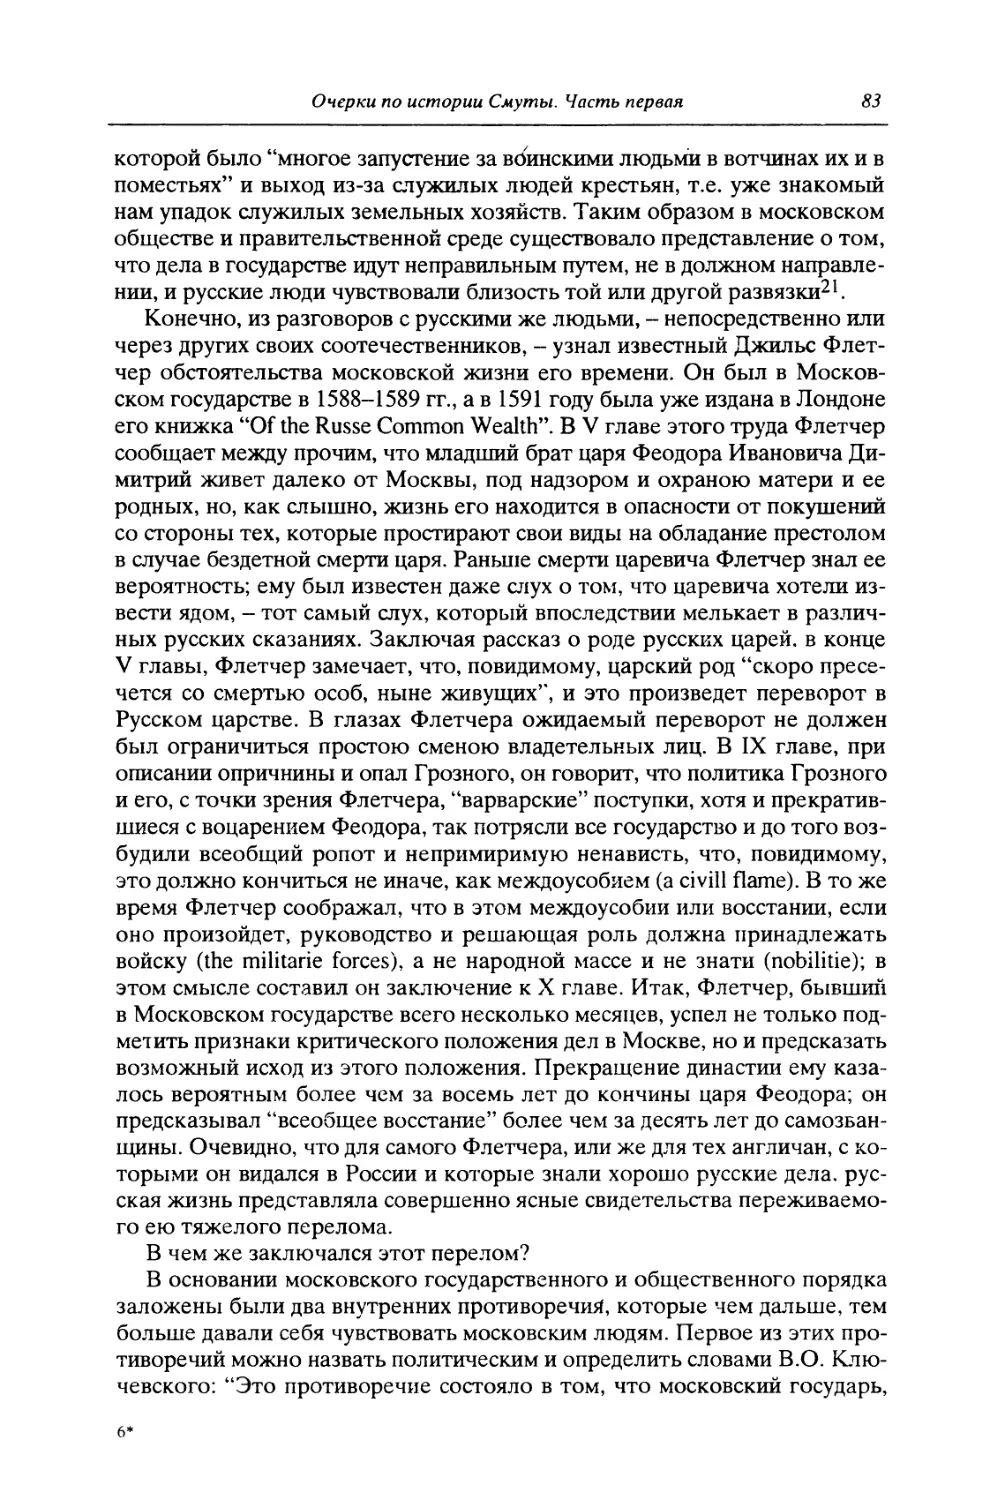 II. Политическое противоречие в московской жизни XVI века: власть и боярство в Московском государстве